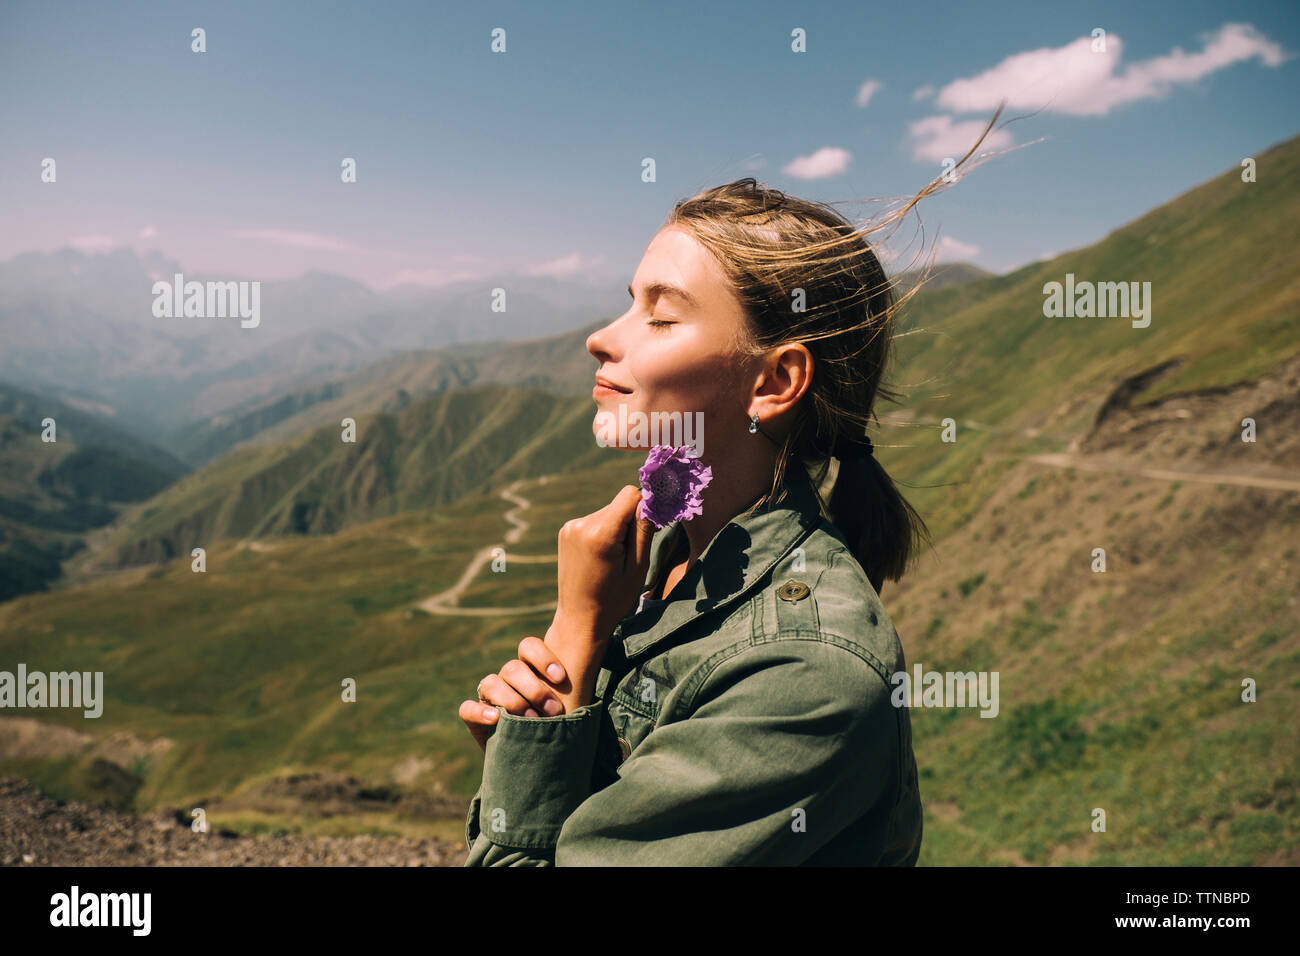 Vue latérale du smiling woman holding flower while standing on mountain contre ciel lors de journée ensoleillée Banque D'Images